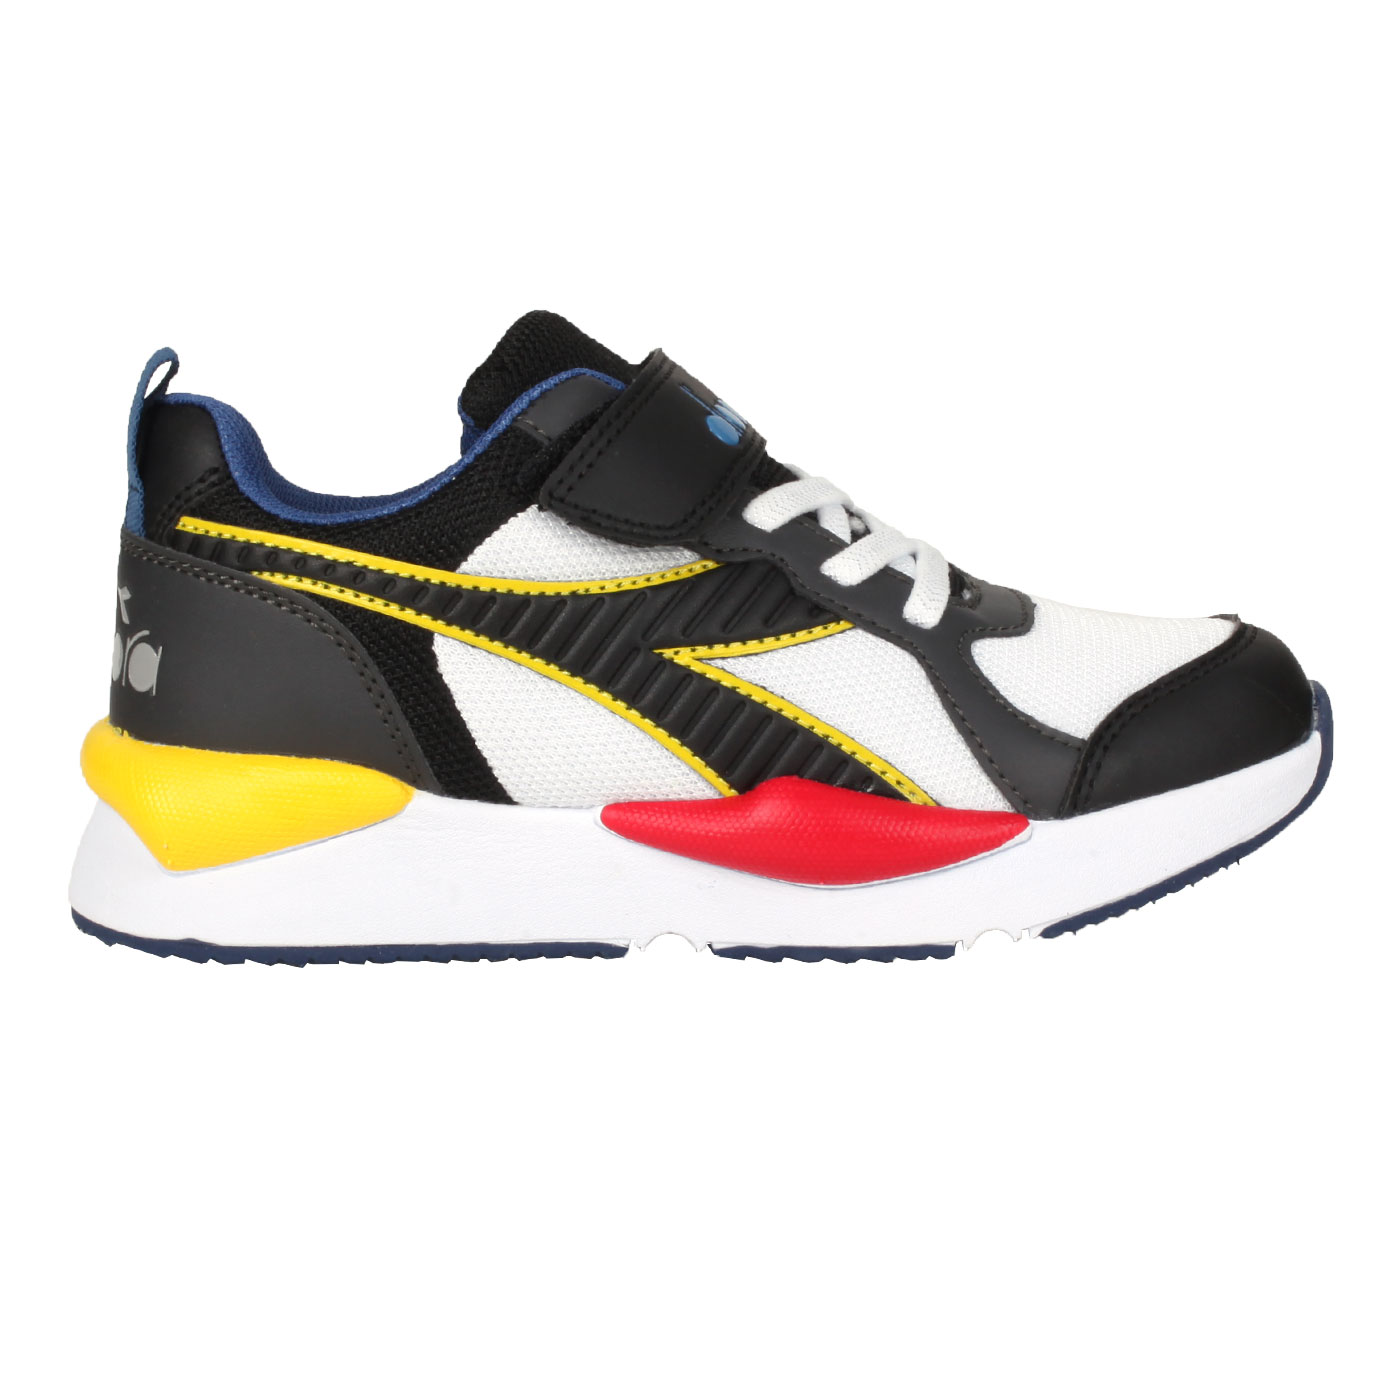 DIADORA 中童生活時尚運動鞋-超寬楦 DA13069 - 白黑紅黃藍